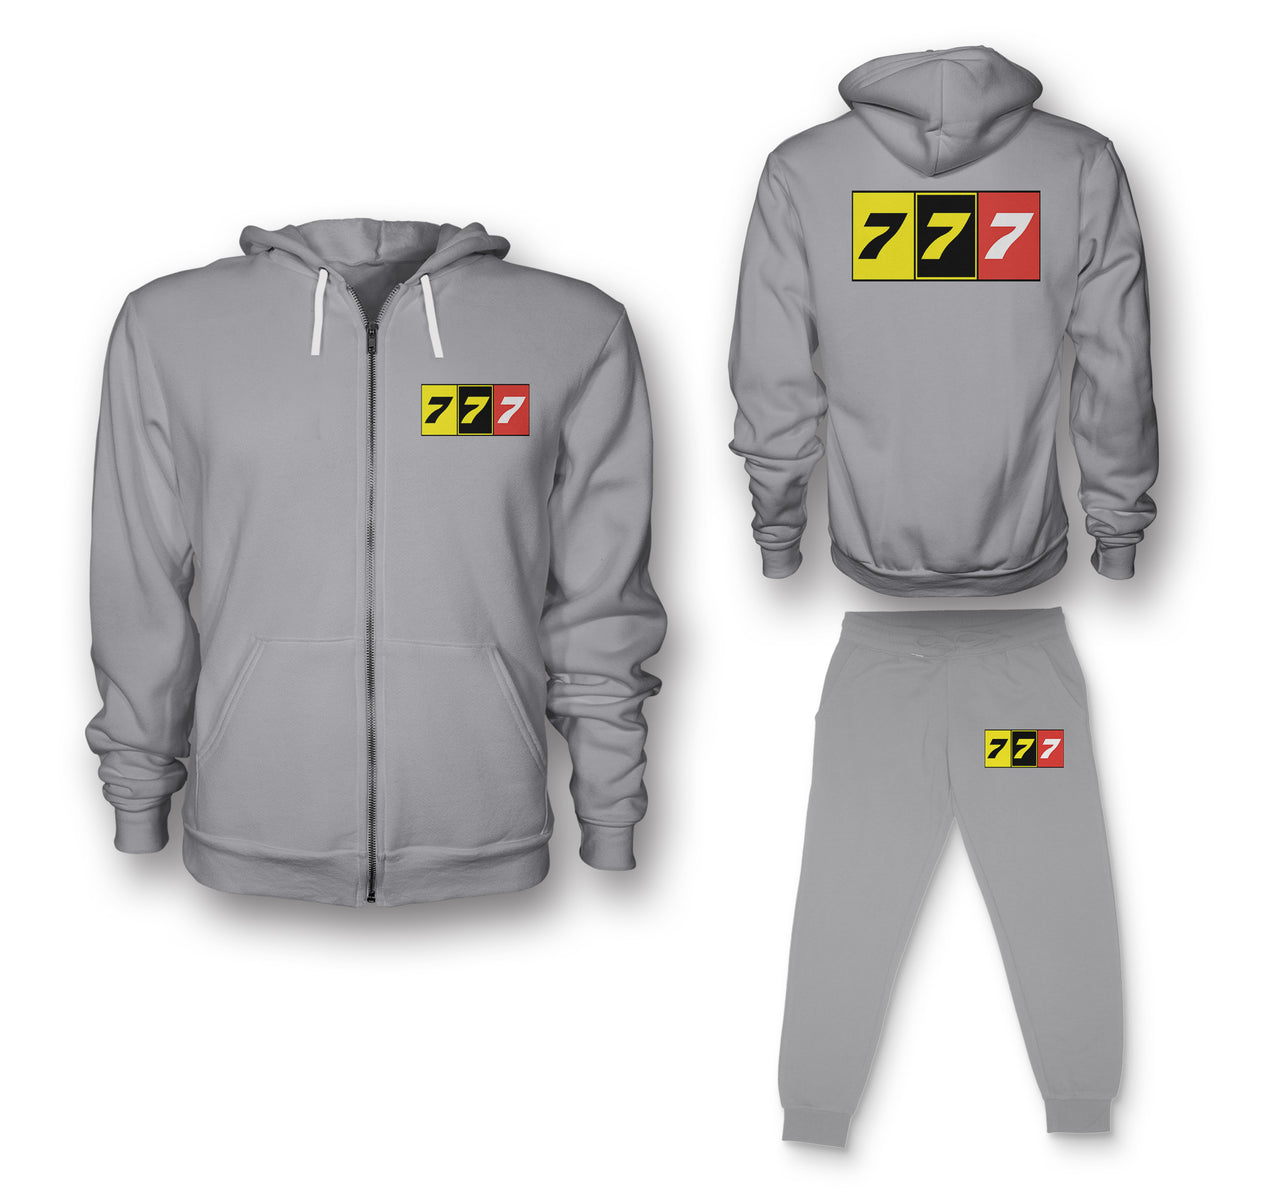 Flat Colourful 777 Designed Zipped Hoodies & Sweatpants Set